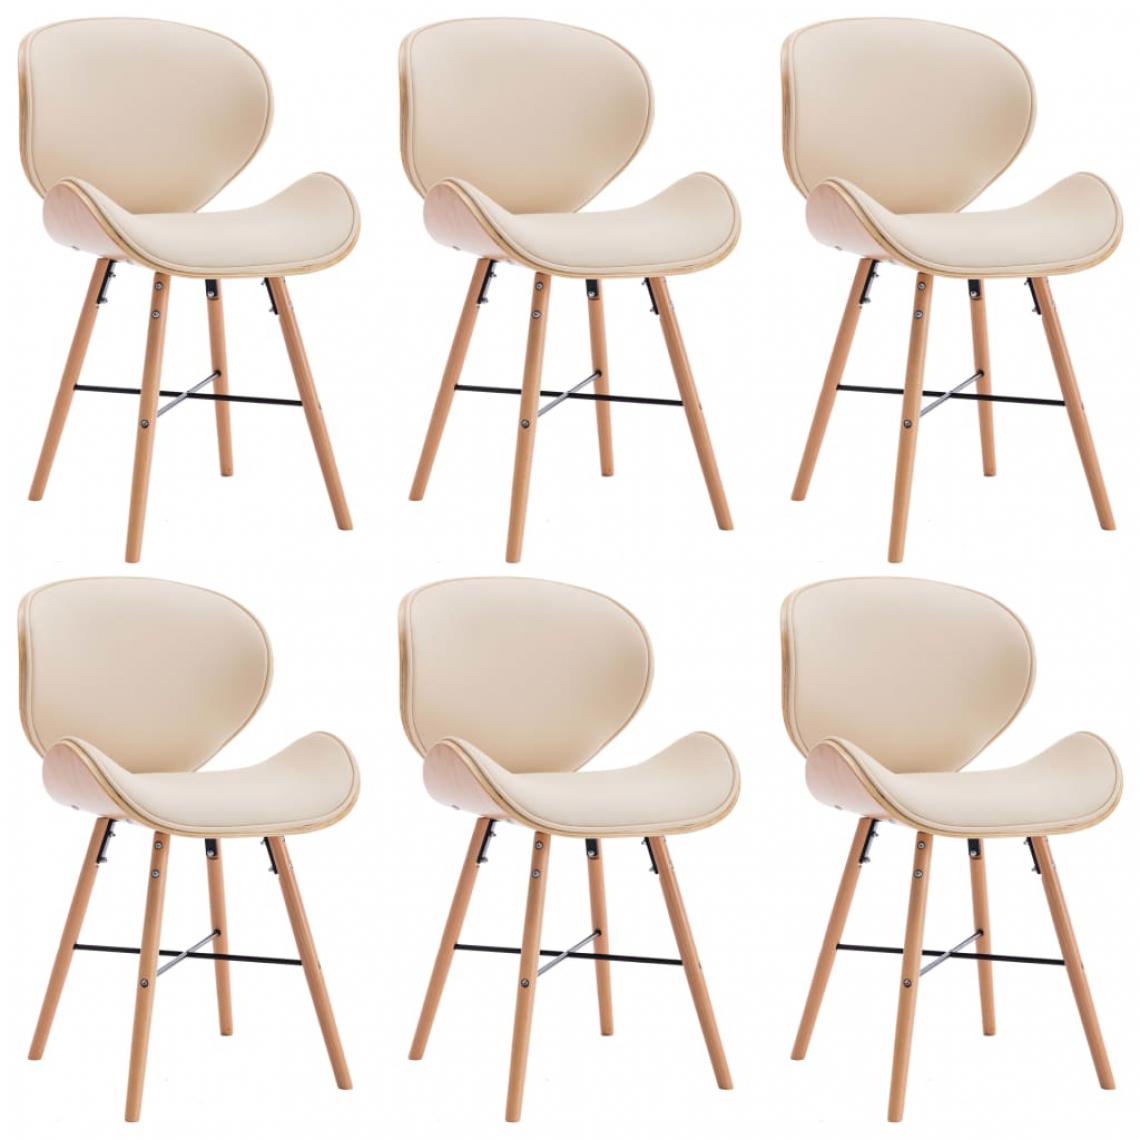 Icaverne - Superbe Fauteuils et chaises Georgetown Chaises de salle à manger 6 pcs Crème Similicuir et bois courbé - Chaises